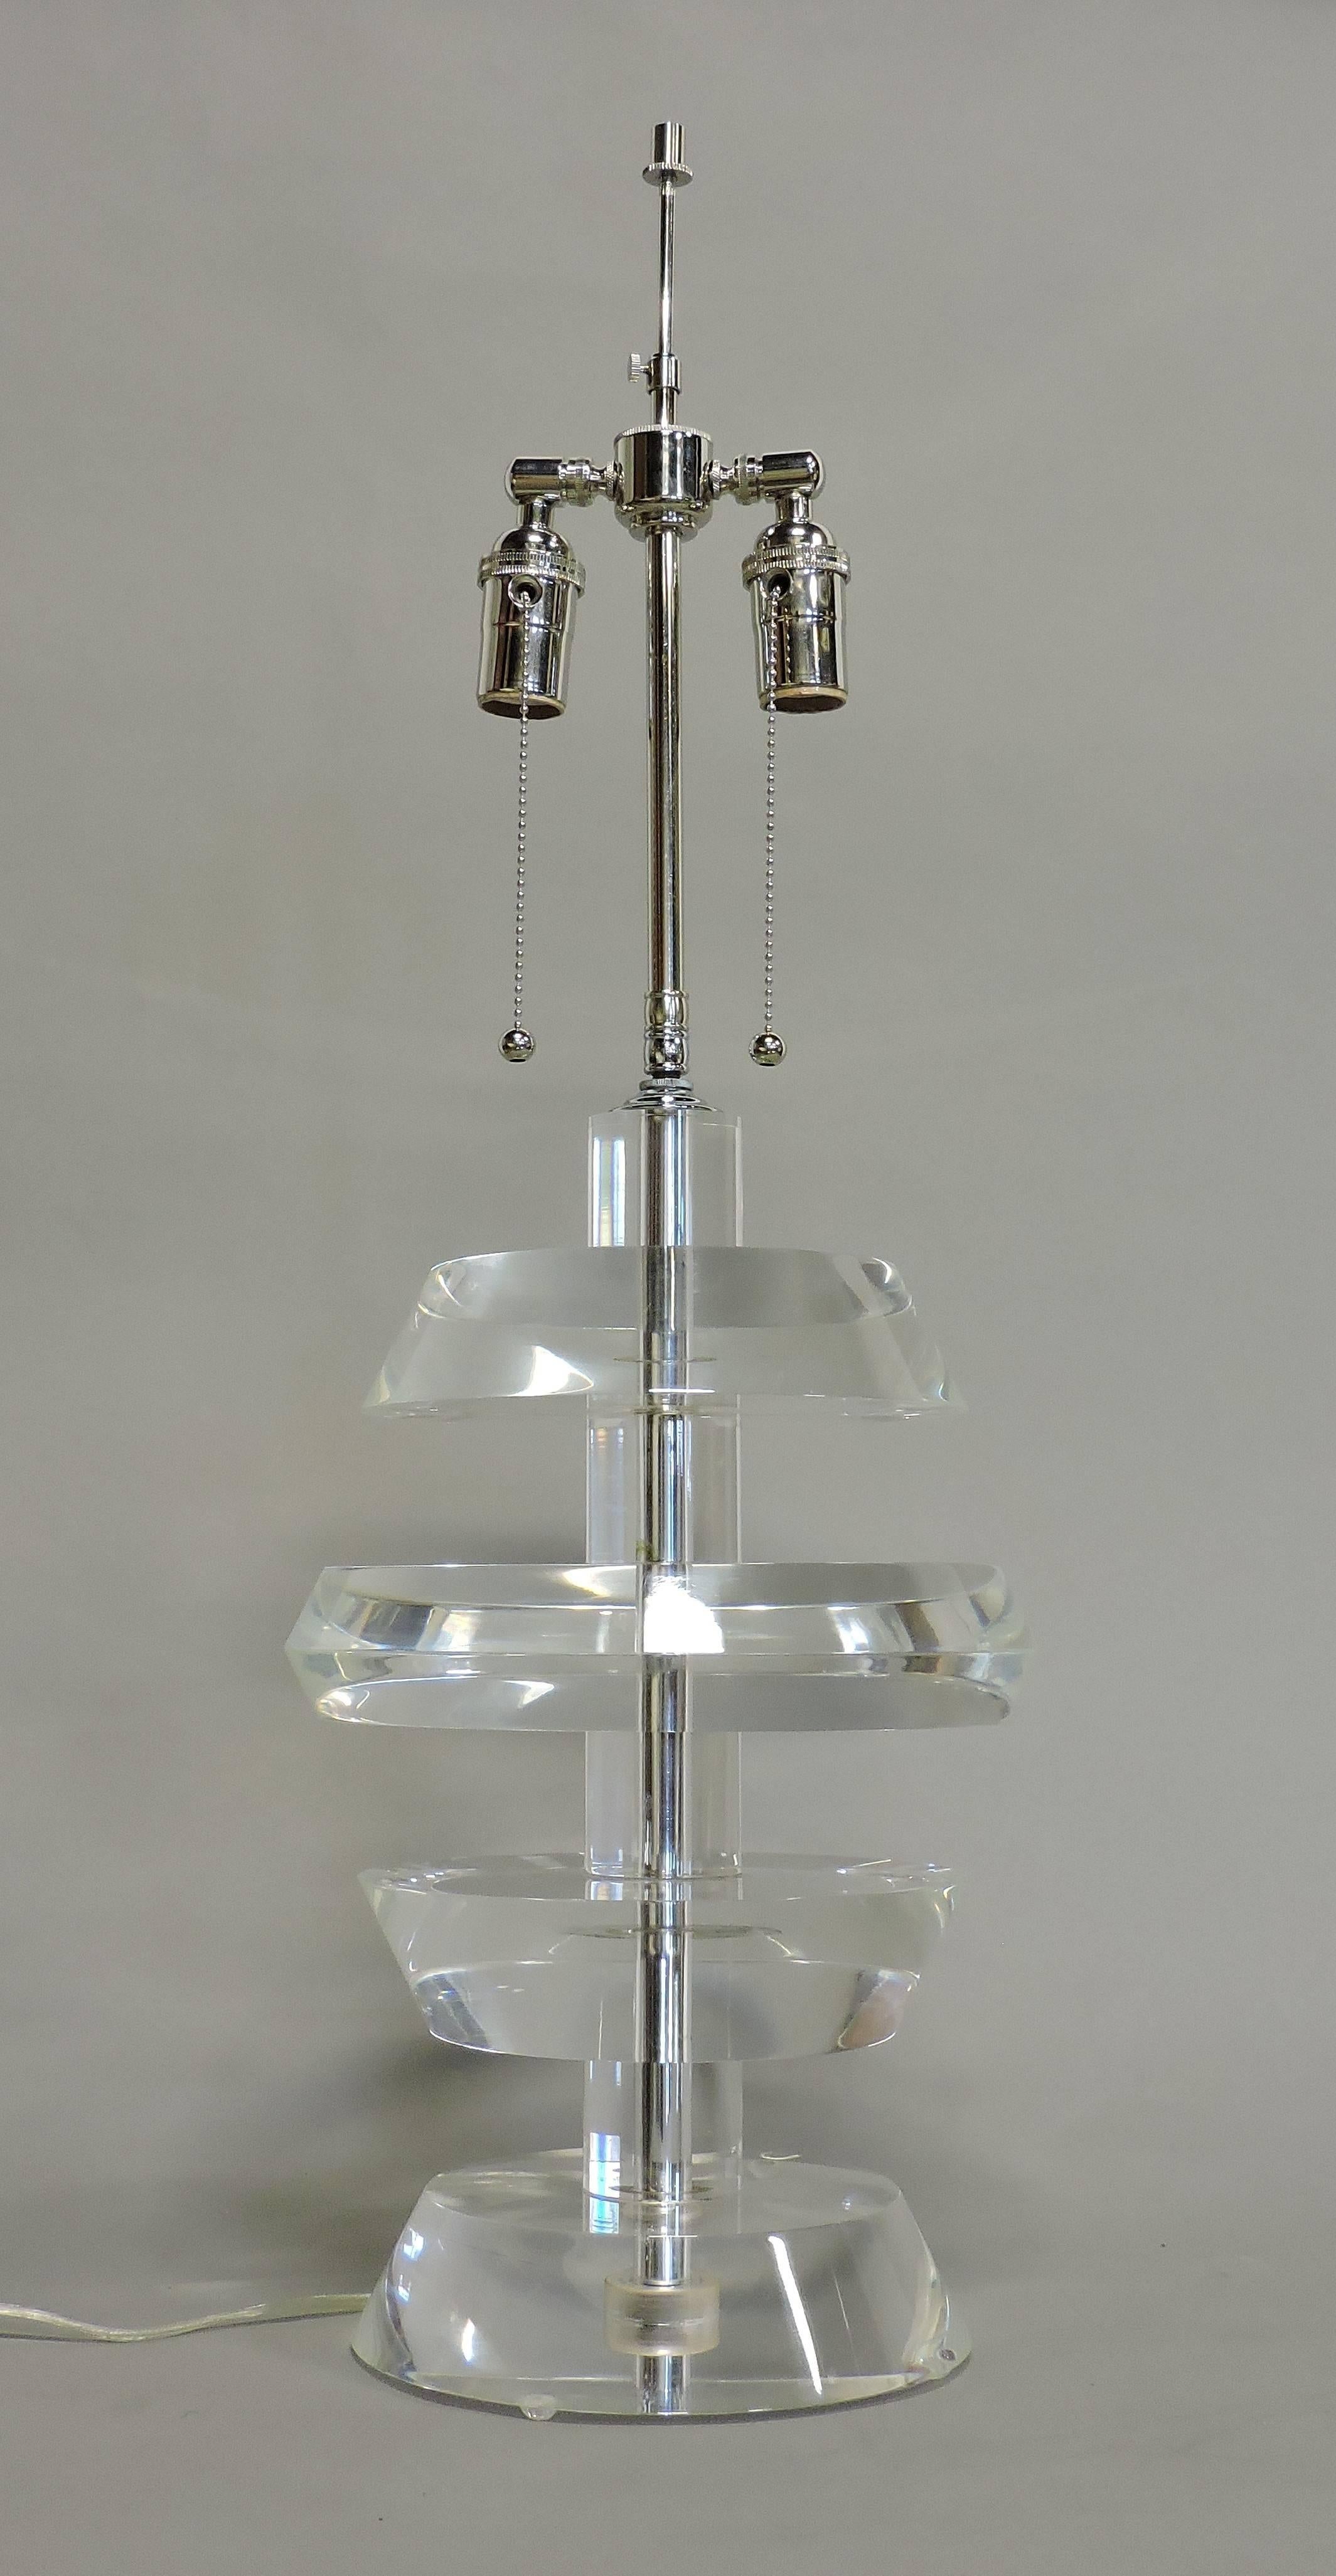 Wunderschöne und schwere, hochwertige Lucite-Lampe im Stil von Karl Springer. Diese Lampe hat dicke runde Scheiben aus gestapeltem klarem Lucite, eine doppelte Lichtfassung und eine komplett neue Verkabelung. Der Lampenschirm ist nicht im